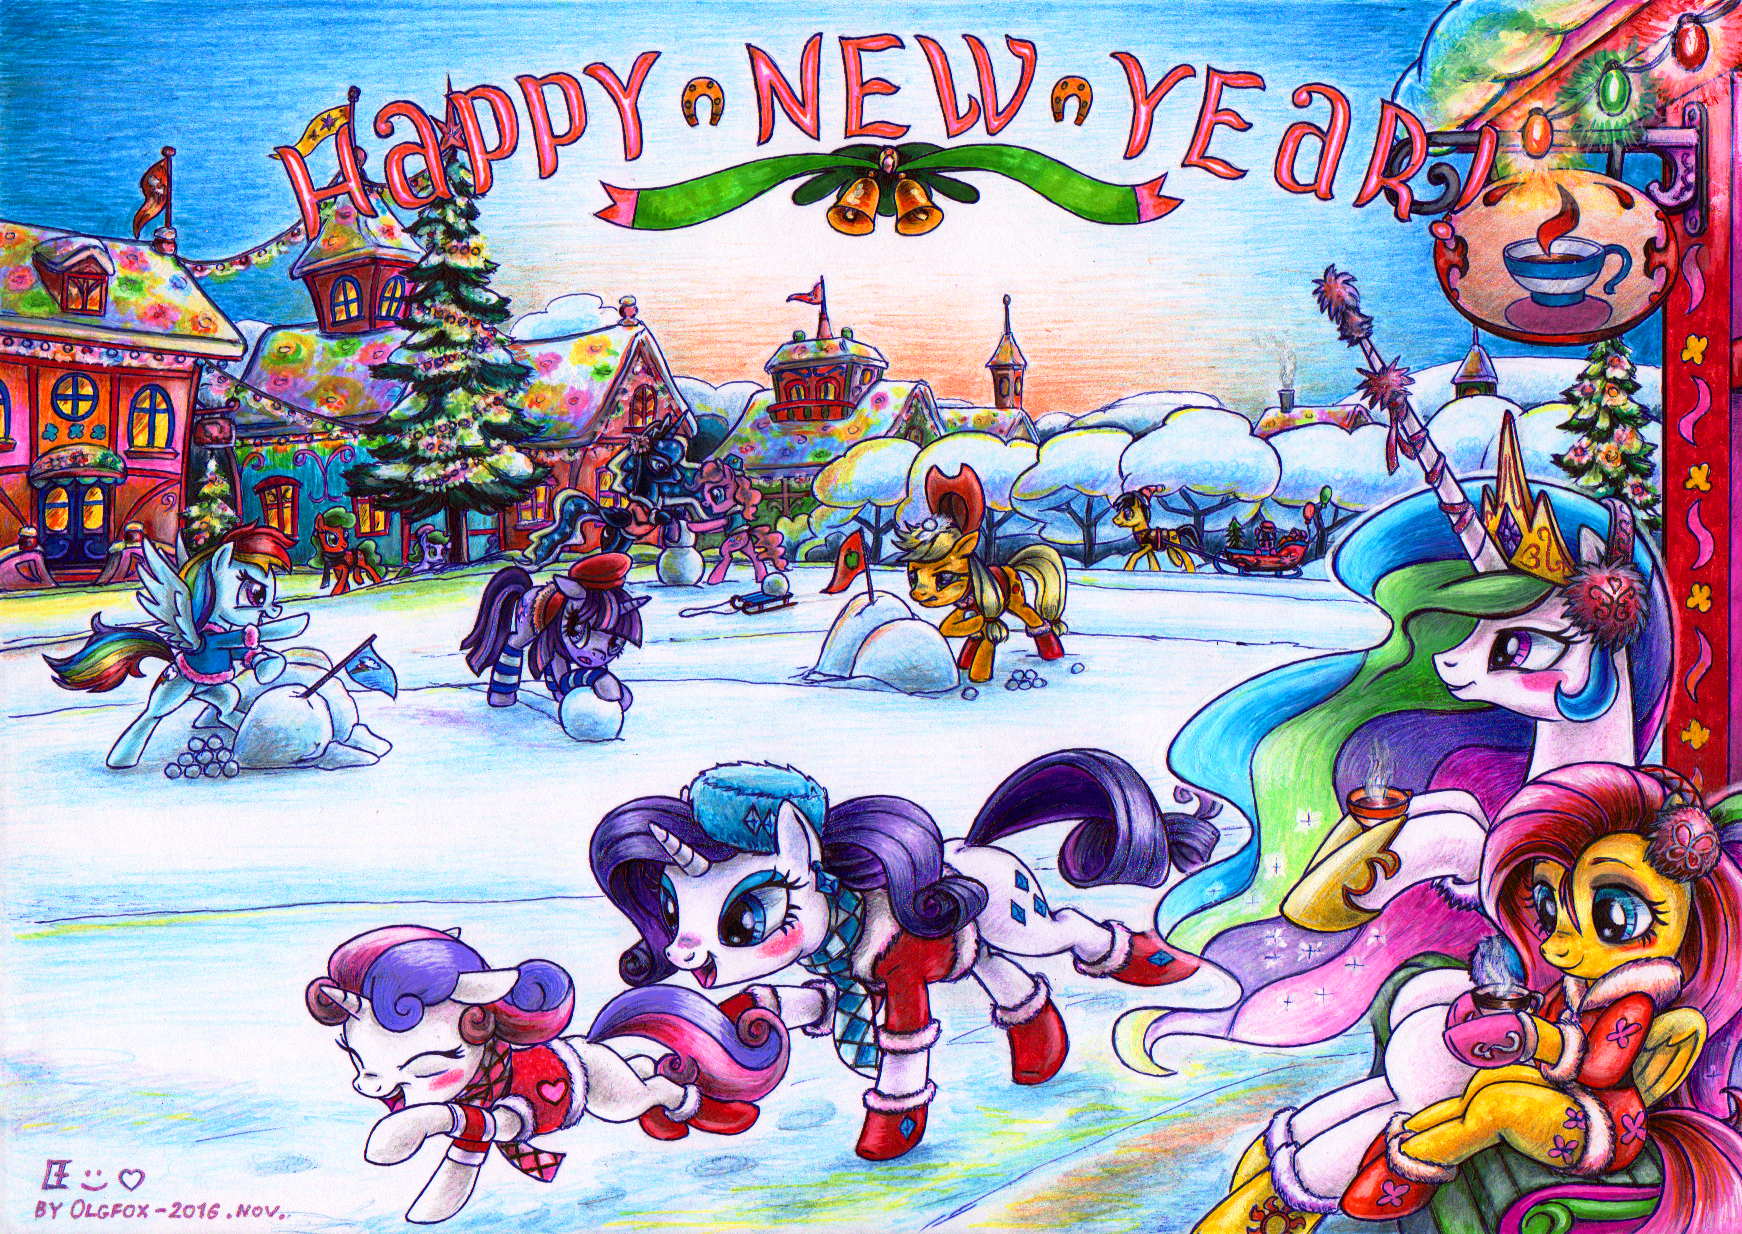 Happy New Year pony by Olgfox 2016 nov.png